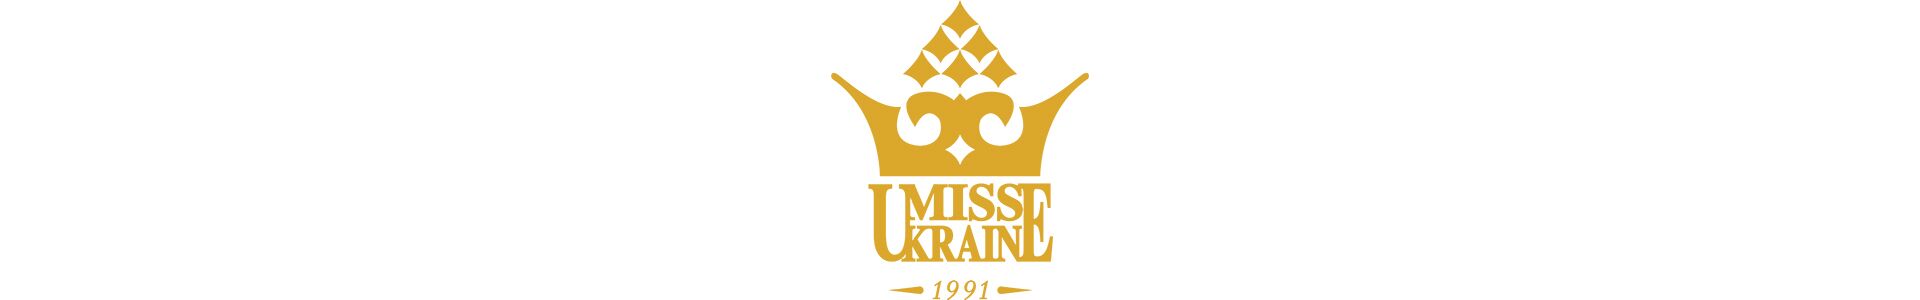 Титул "Міс Україна 2018" отримала 19-річна Леоніла Гузь з Херсонської області